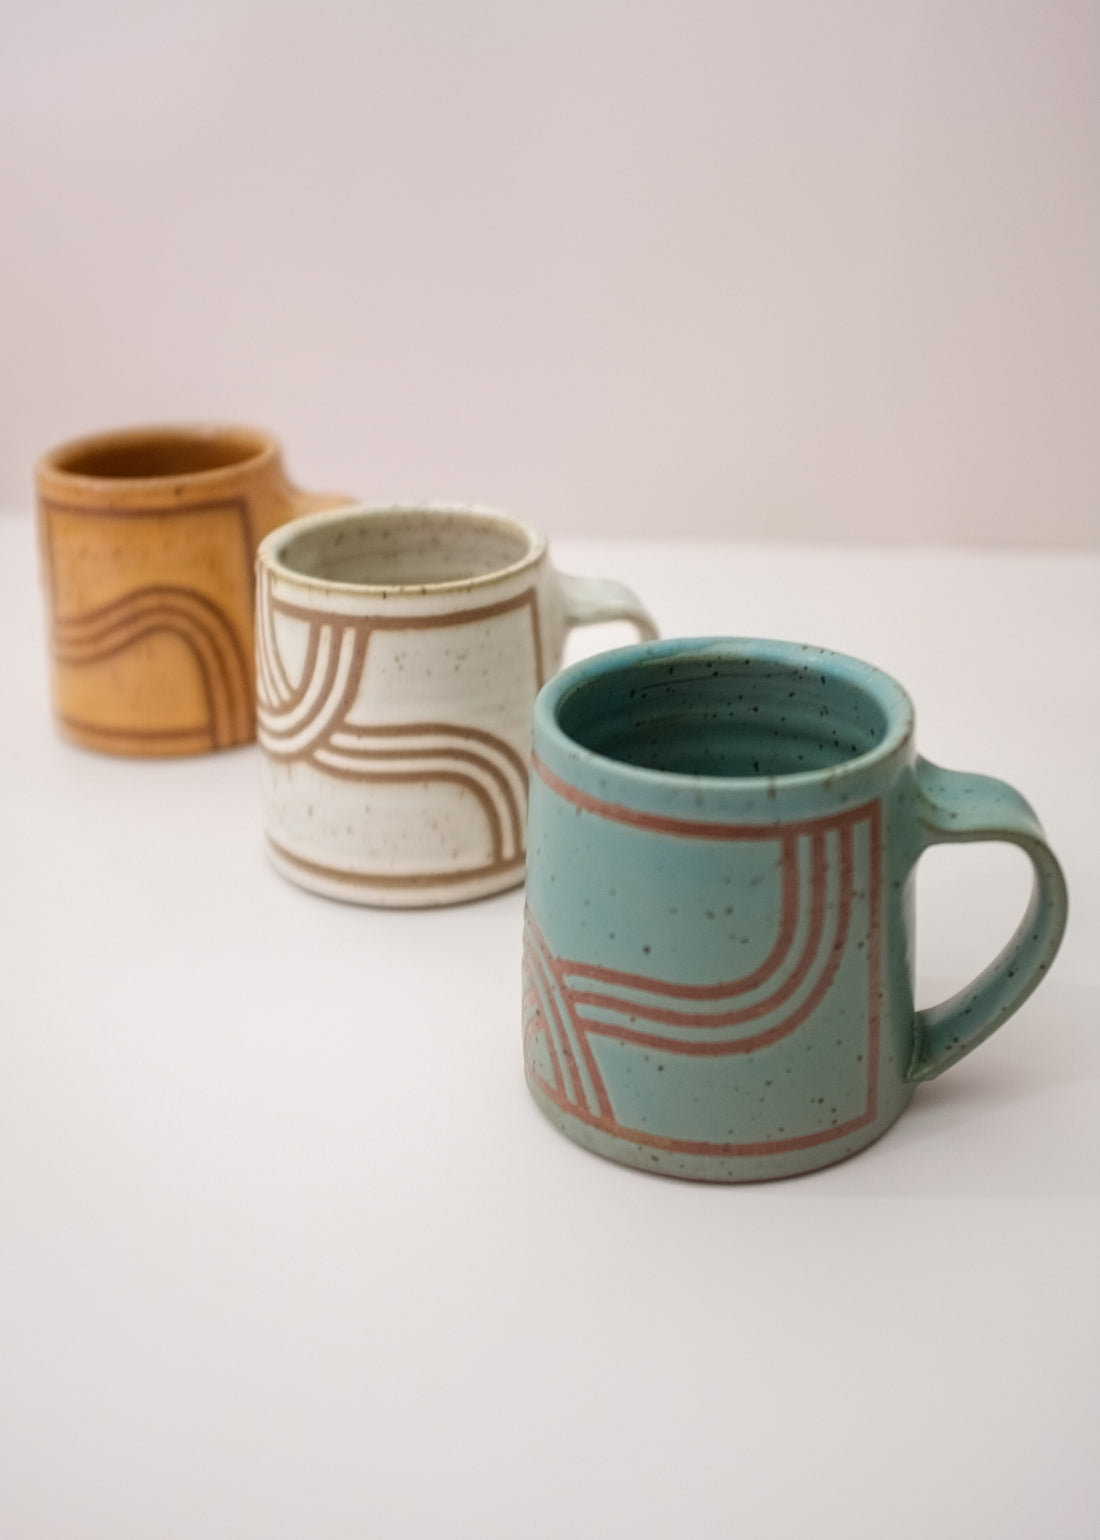 Three Design Mugs in Various Colors